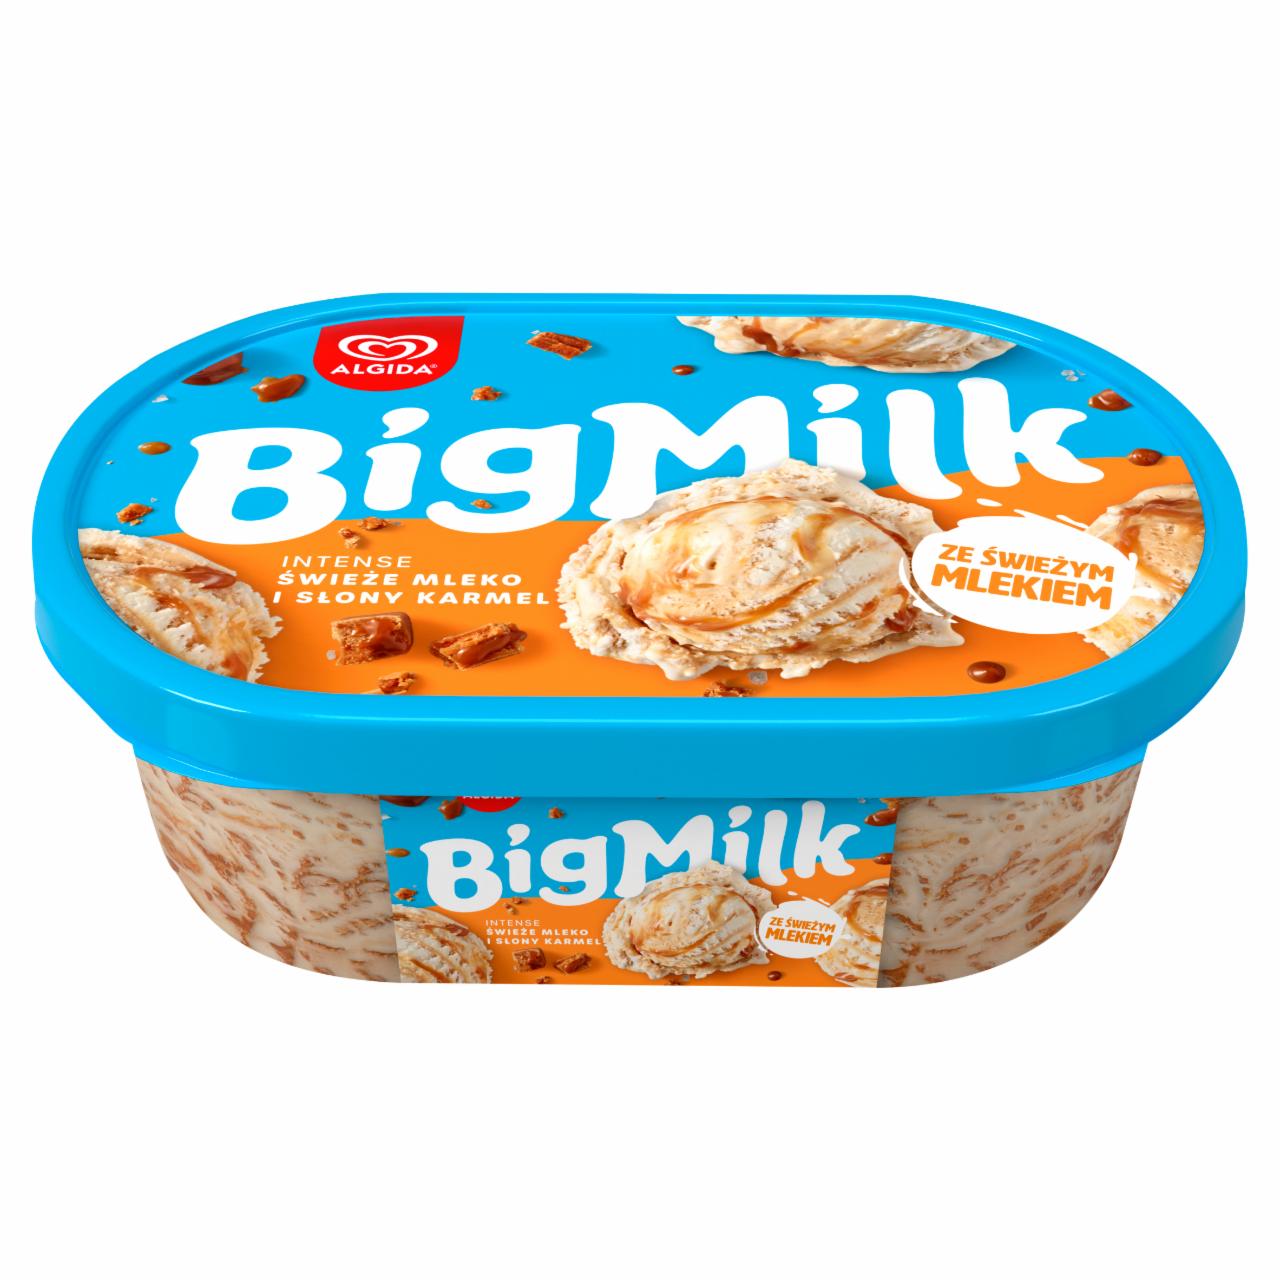 Фото - Мороженое со вкусом шоколада Big milk Algida